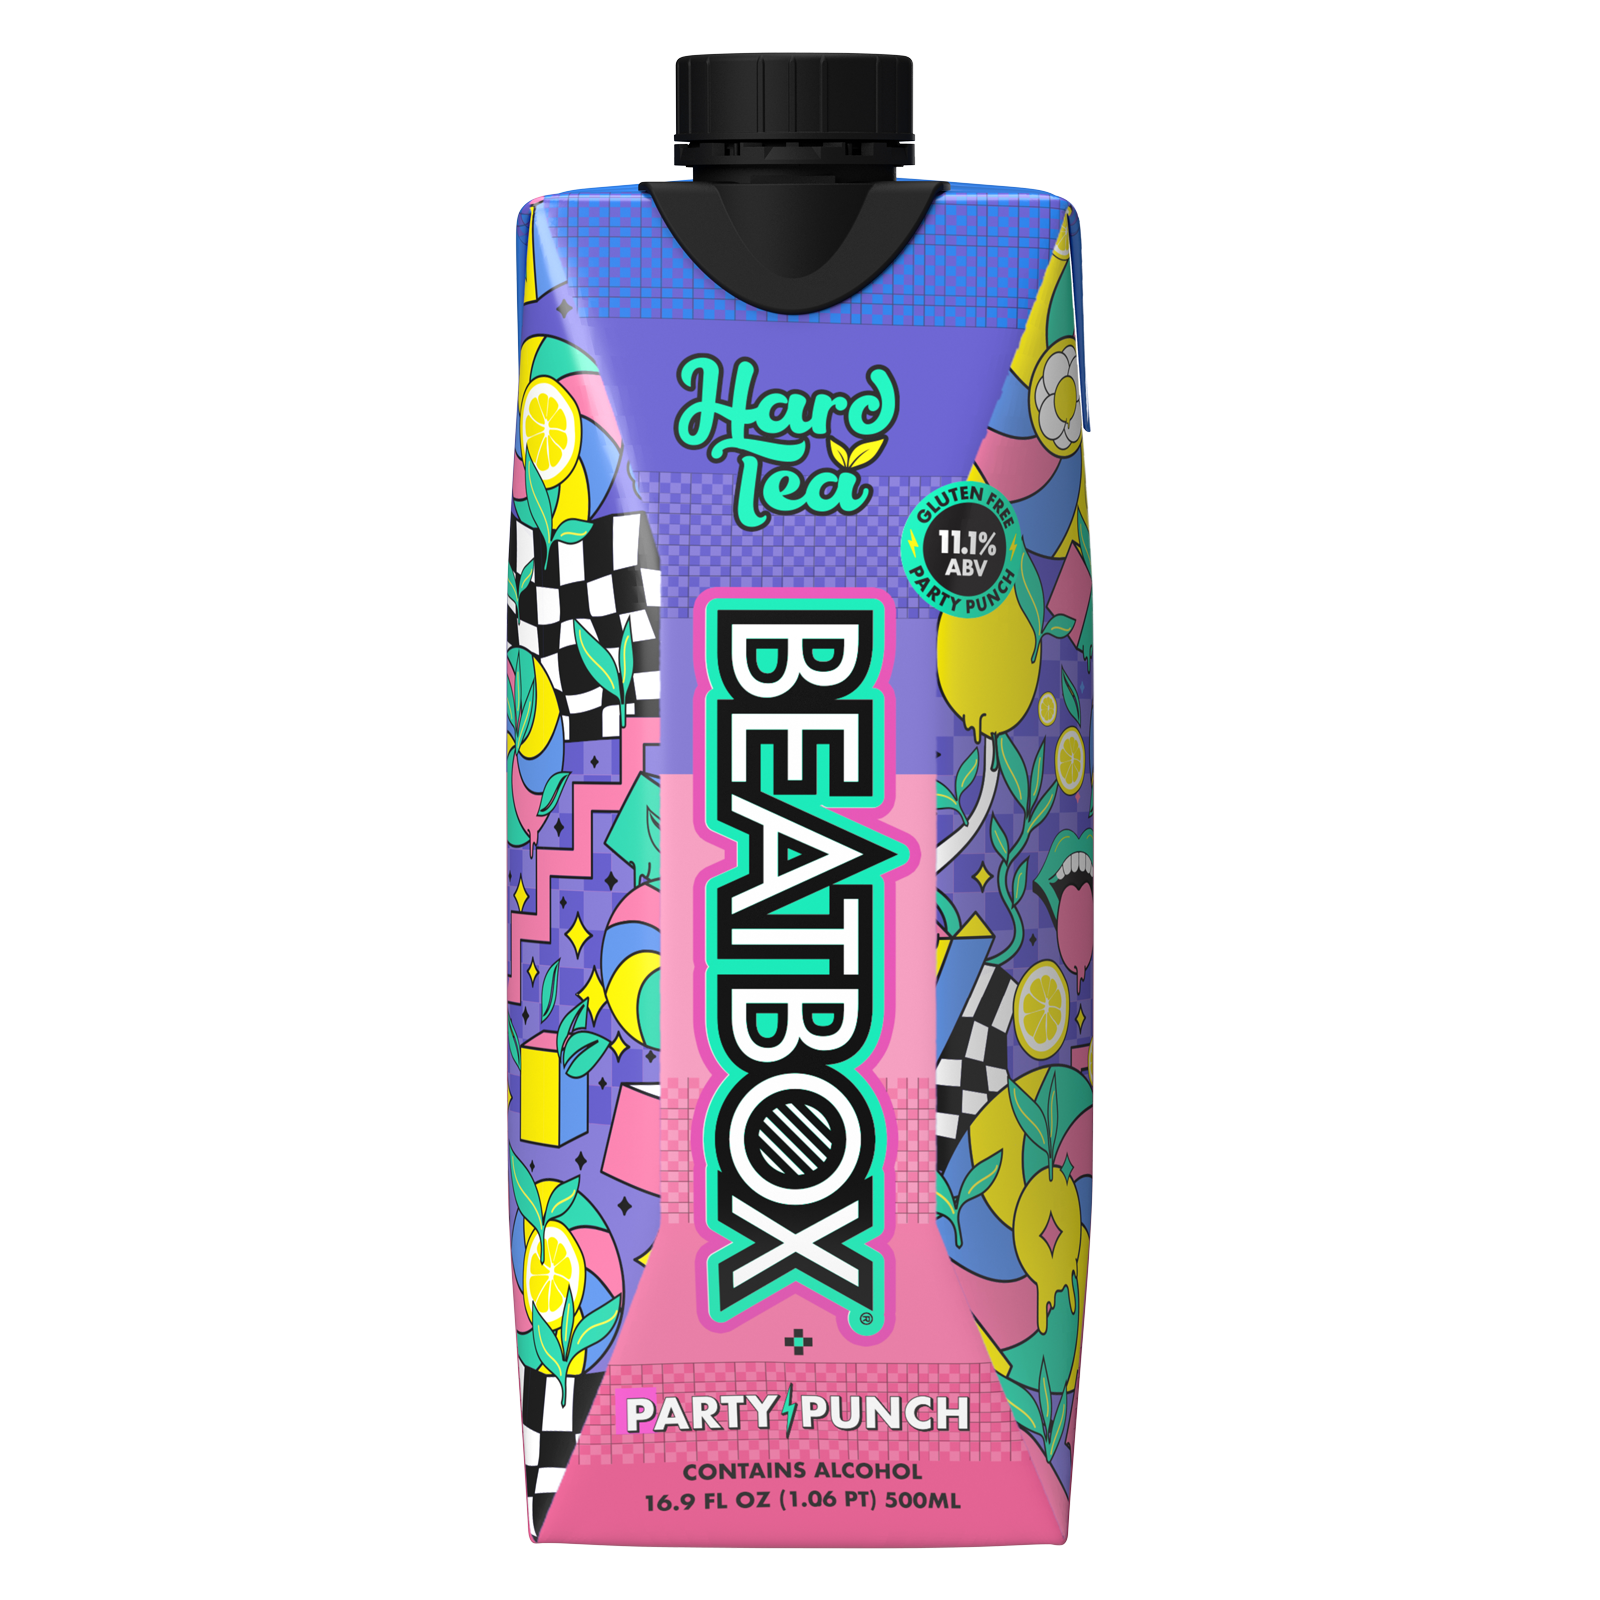 BeatBox Hard Tea Single 500ml  11.1% ABV